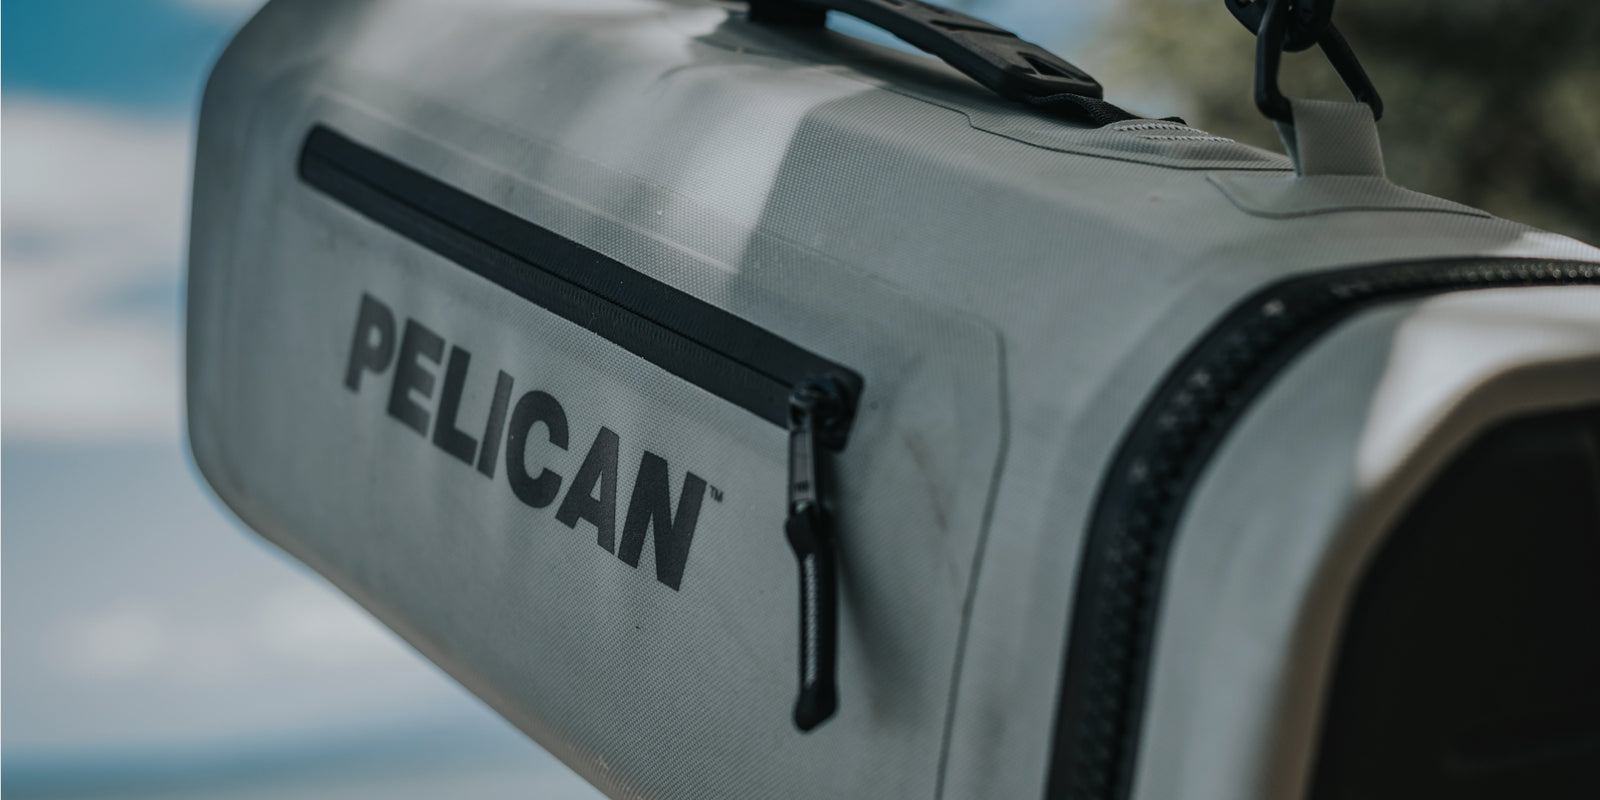 Pelican Coolers FAQ's - Shop Pelican Coolers